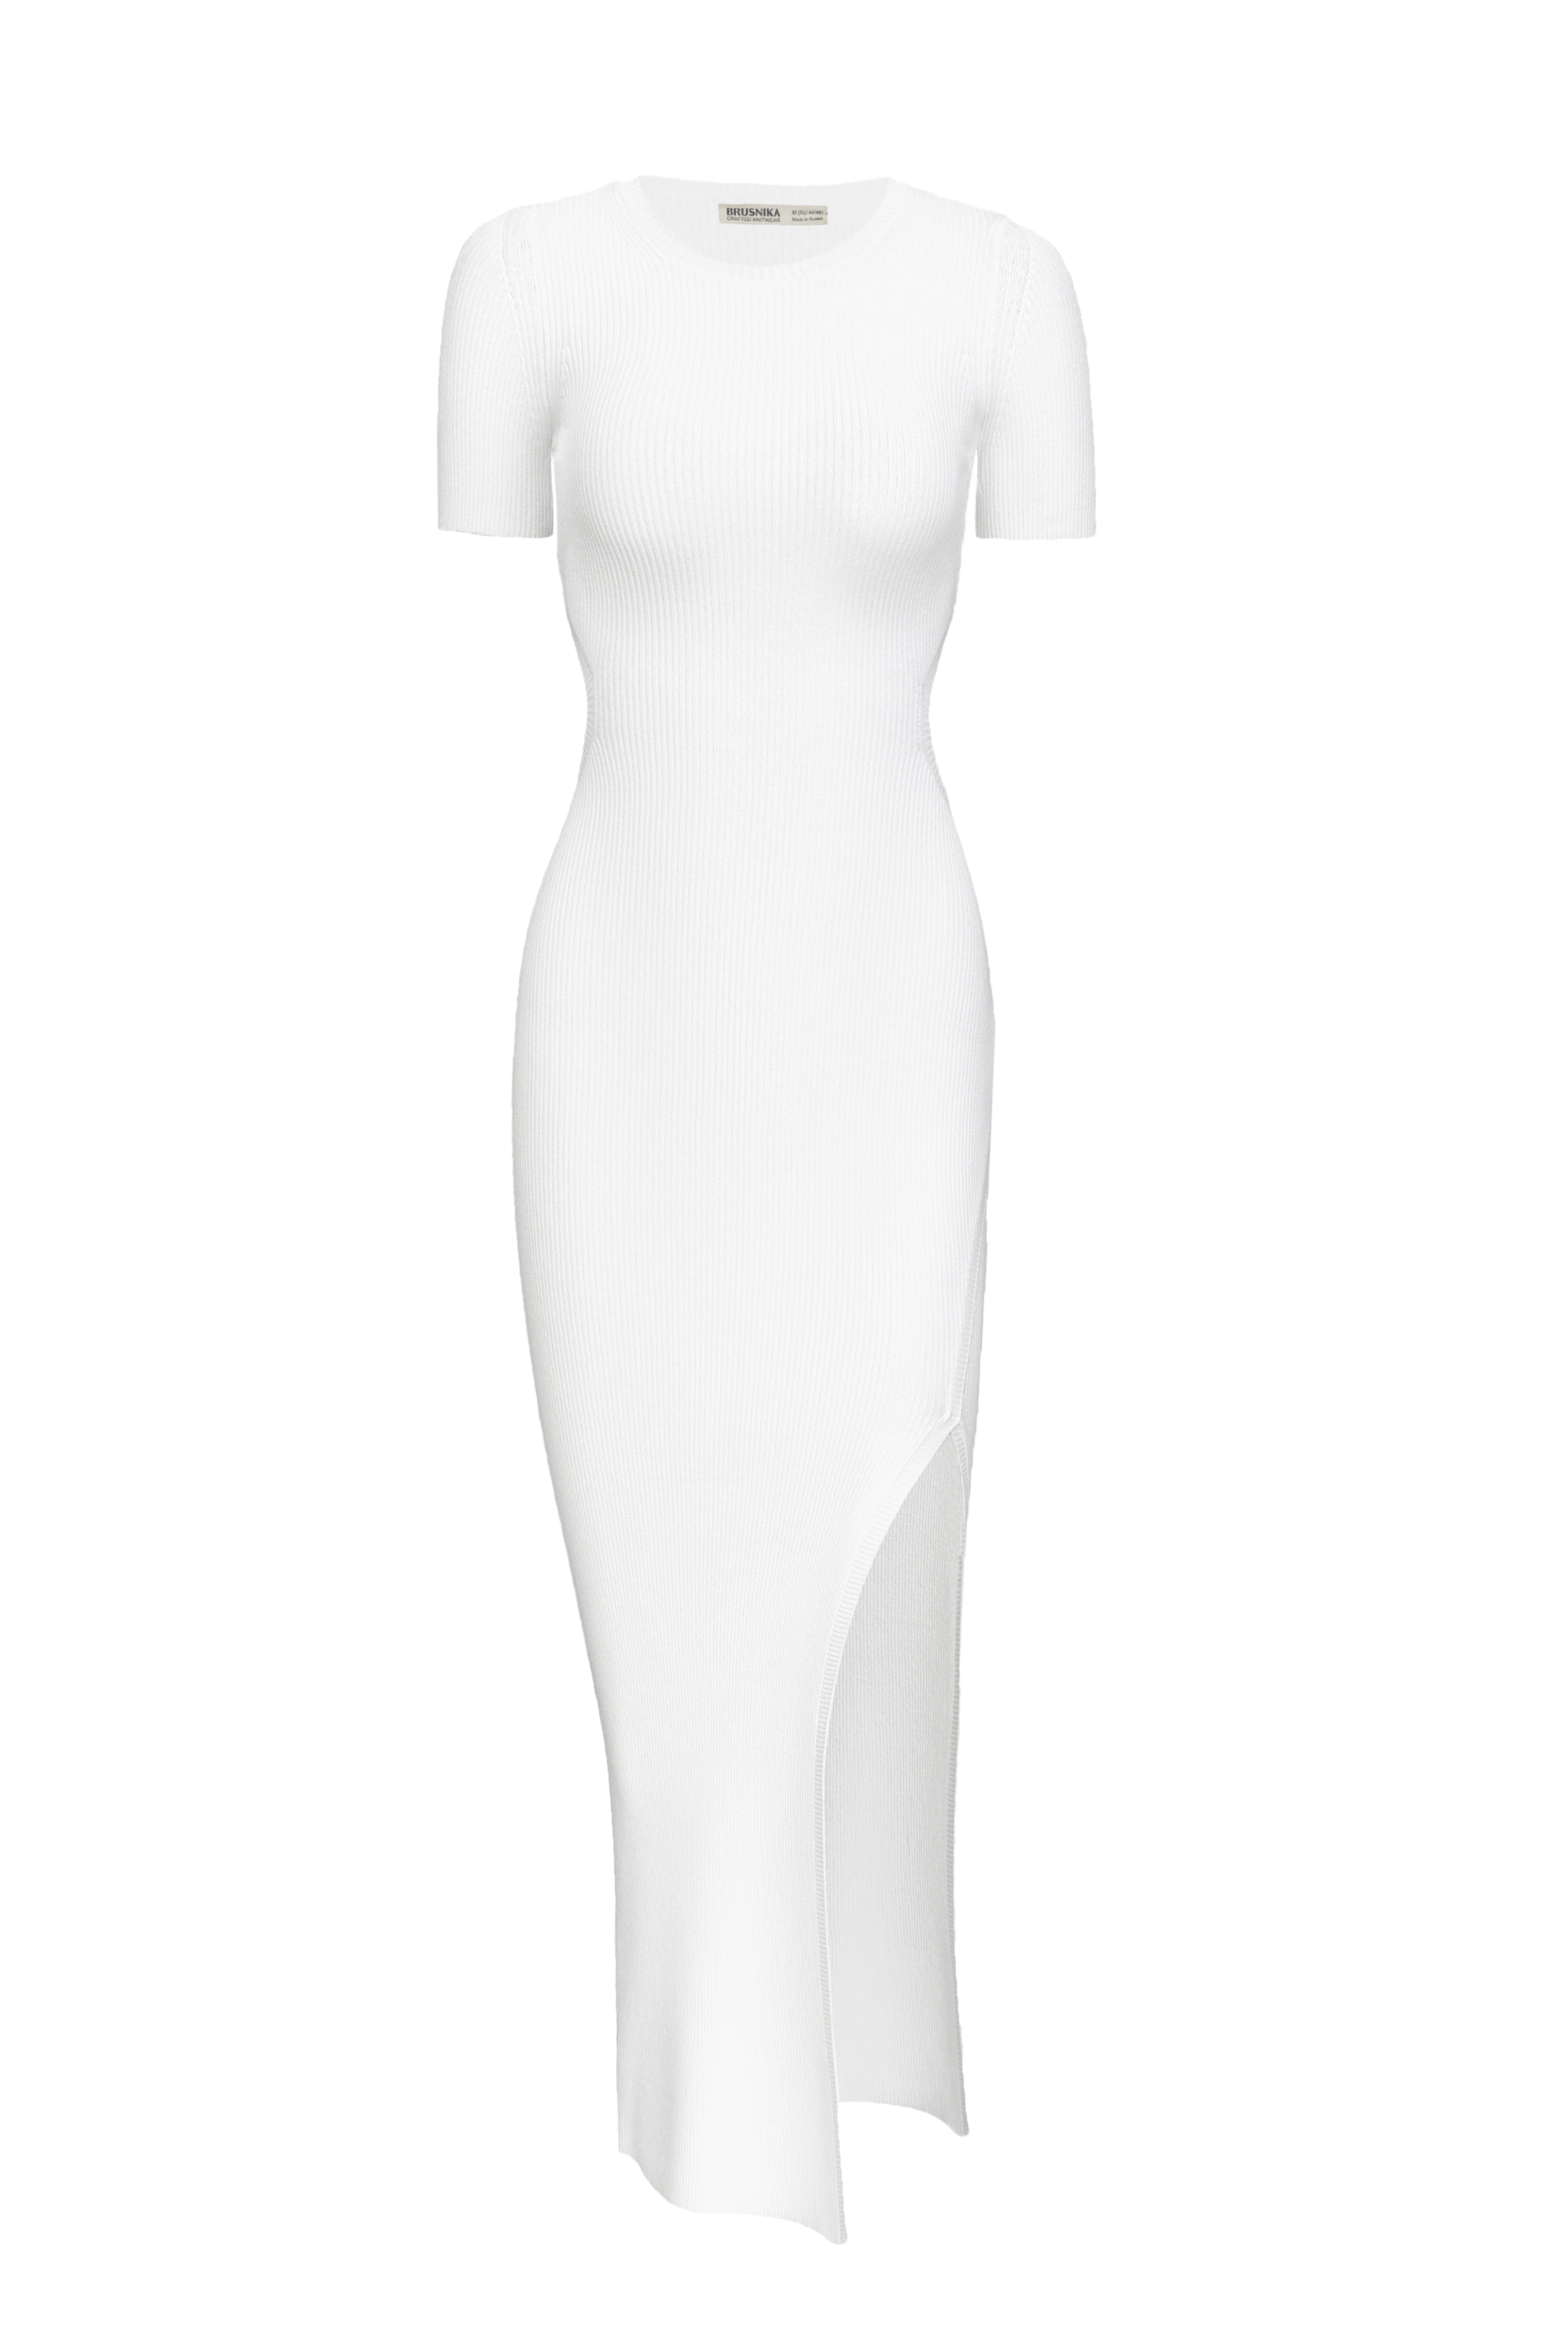 Dress 4586-02 White from BRUSNiKA